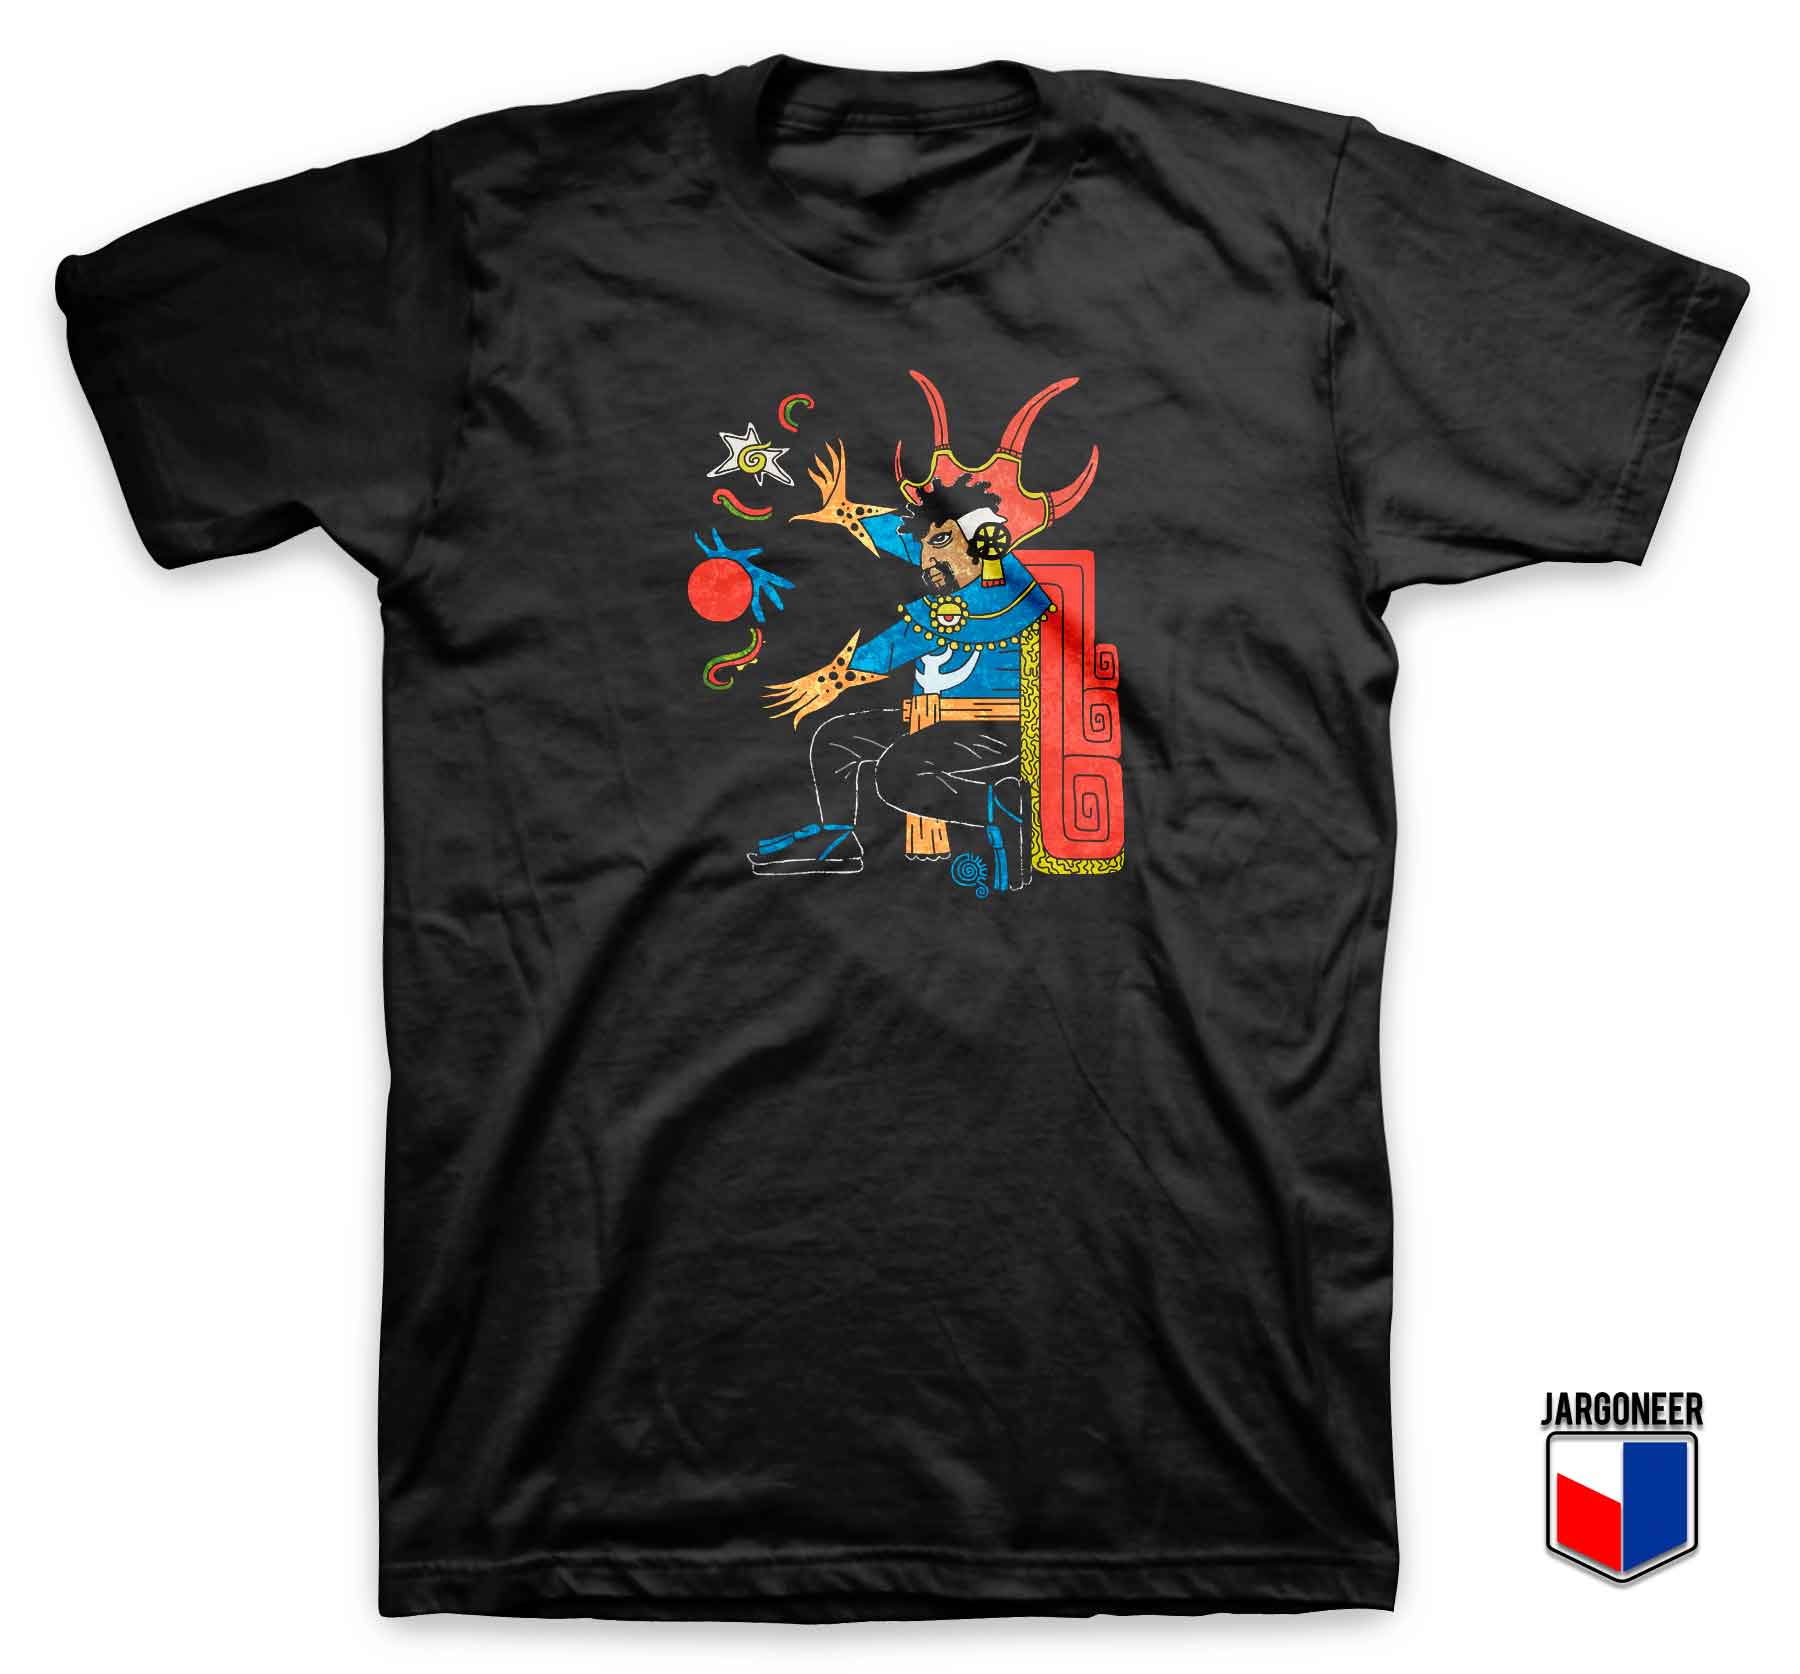 Doctor Strange Aztec Parody T Shirt - Shop Unique Graphic Cool Shirt Designs